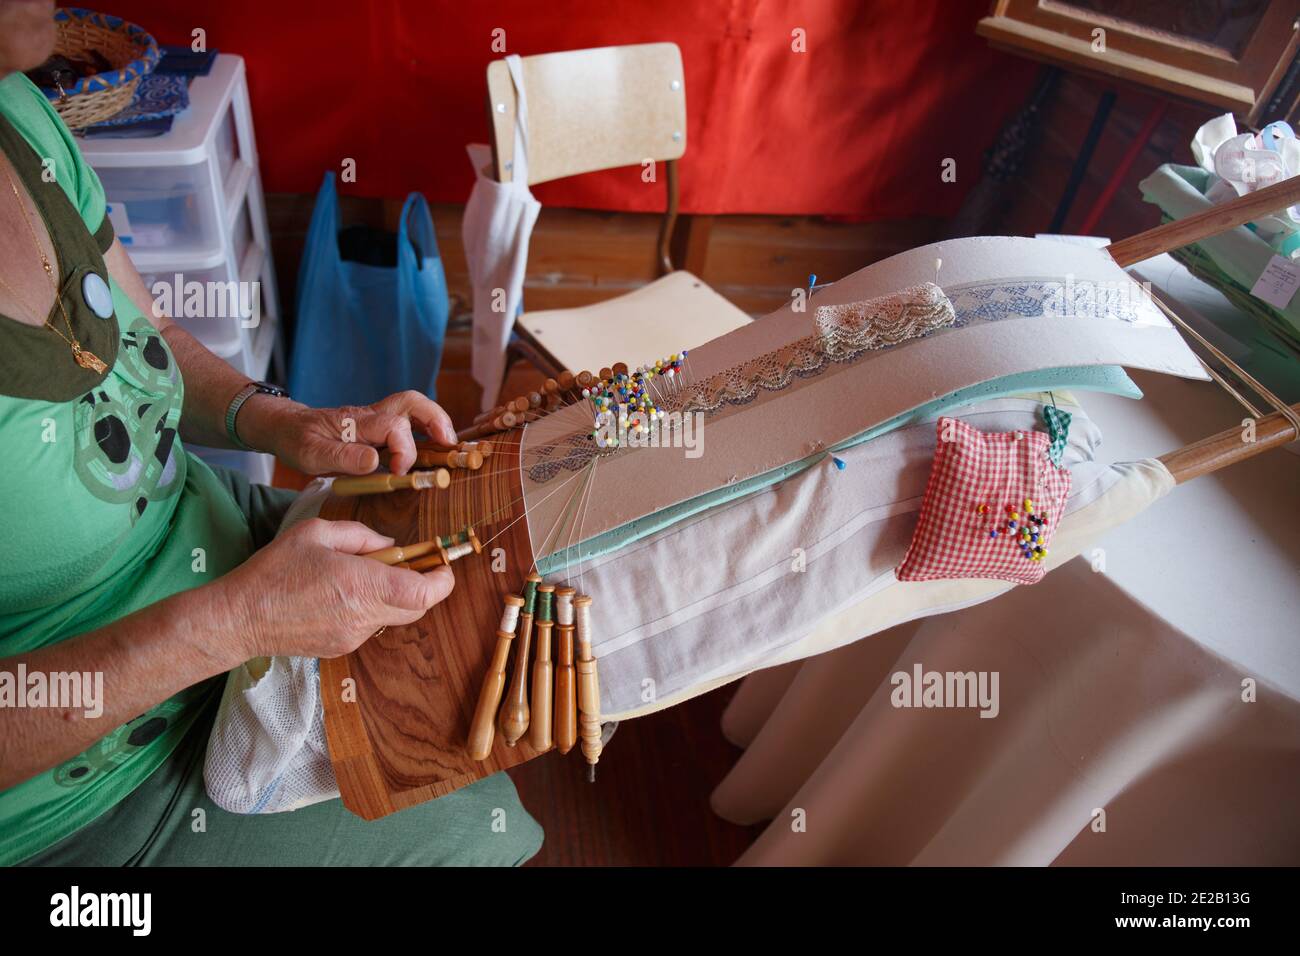 Lacci mani, merletto tradizionale, bobine, spille e filo su un cuscino, Muxia, Galizia, Spagna Foto Stock